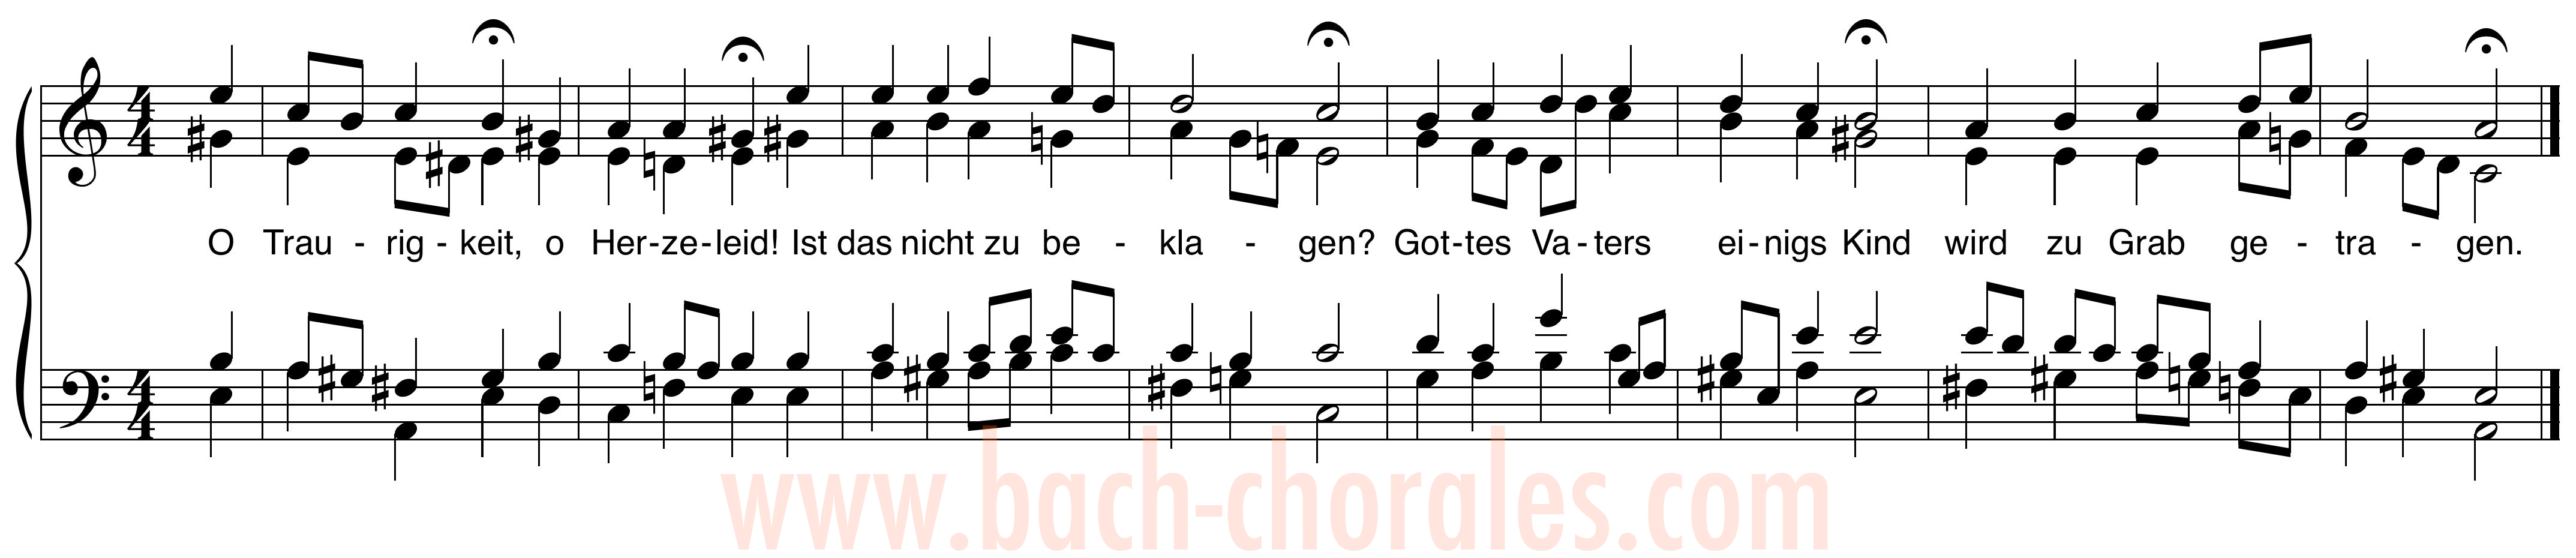 notenbeeld BWV 404 op https://www.bach-chorales.com/